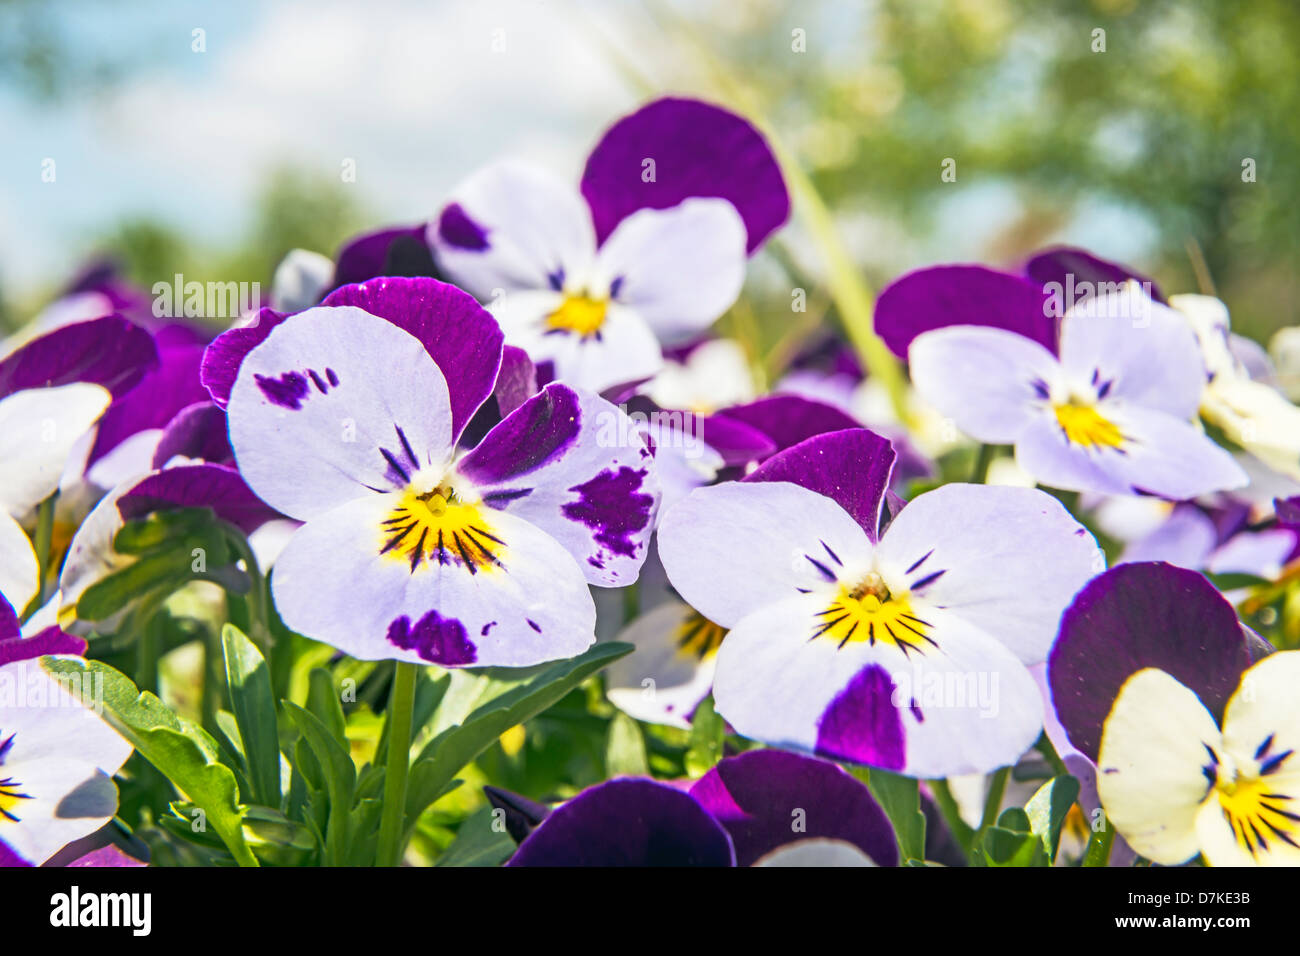 Viola altaica in garden in spring Stock Photo